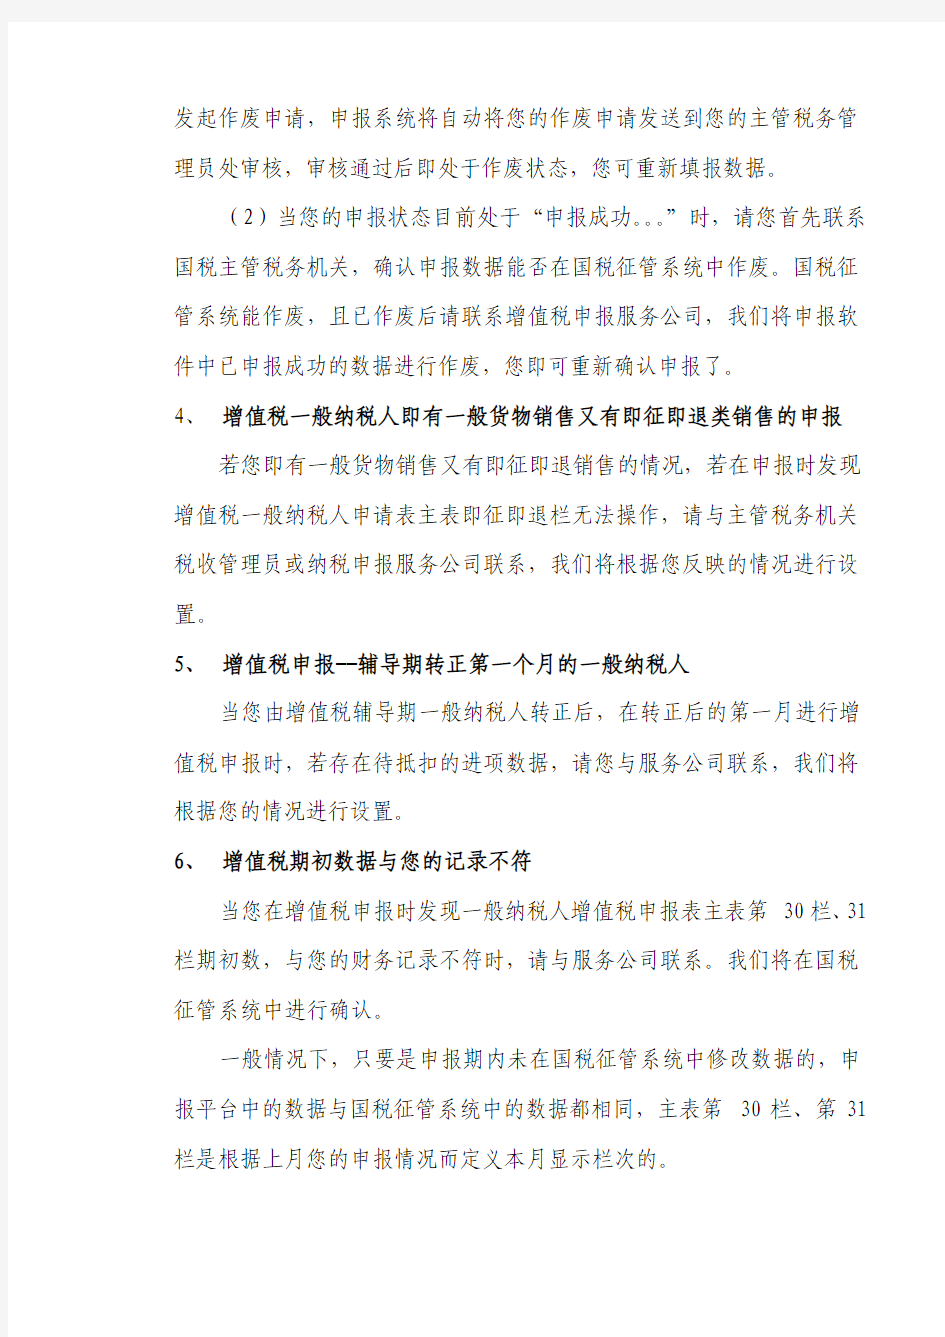 山东省国家税务局网上办税平台常见问题